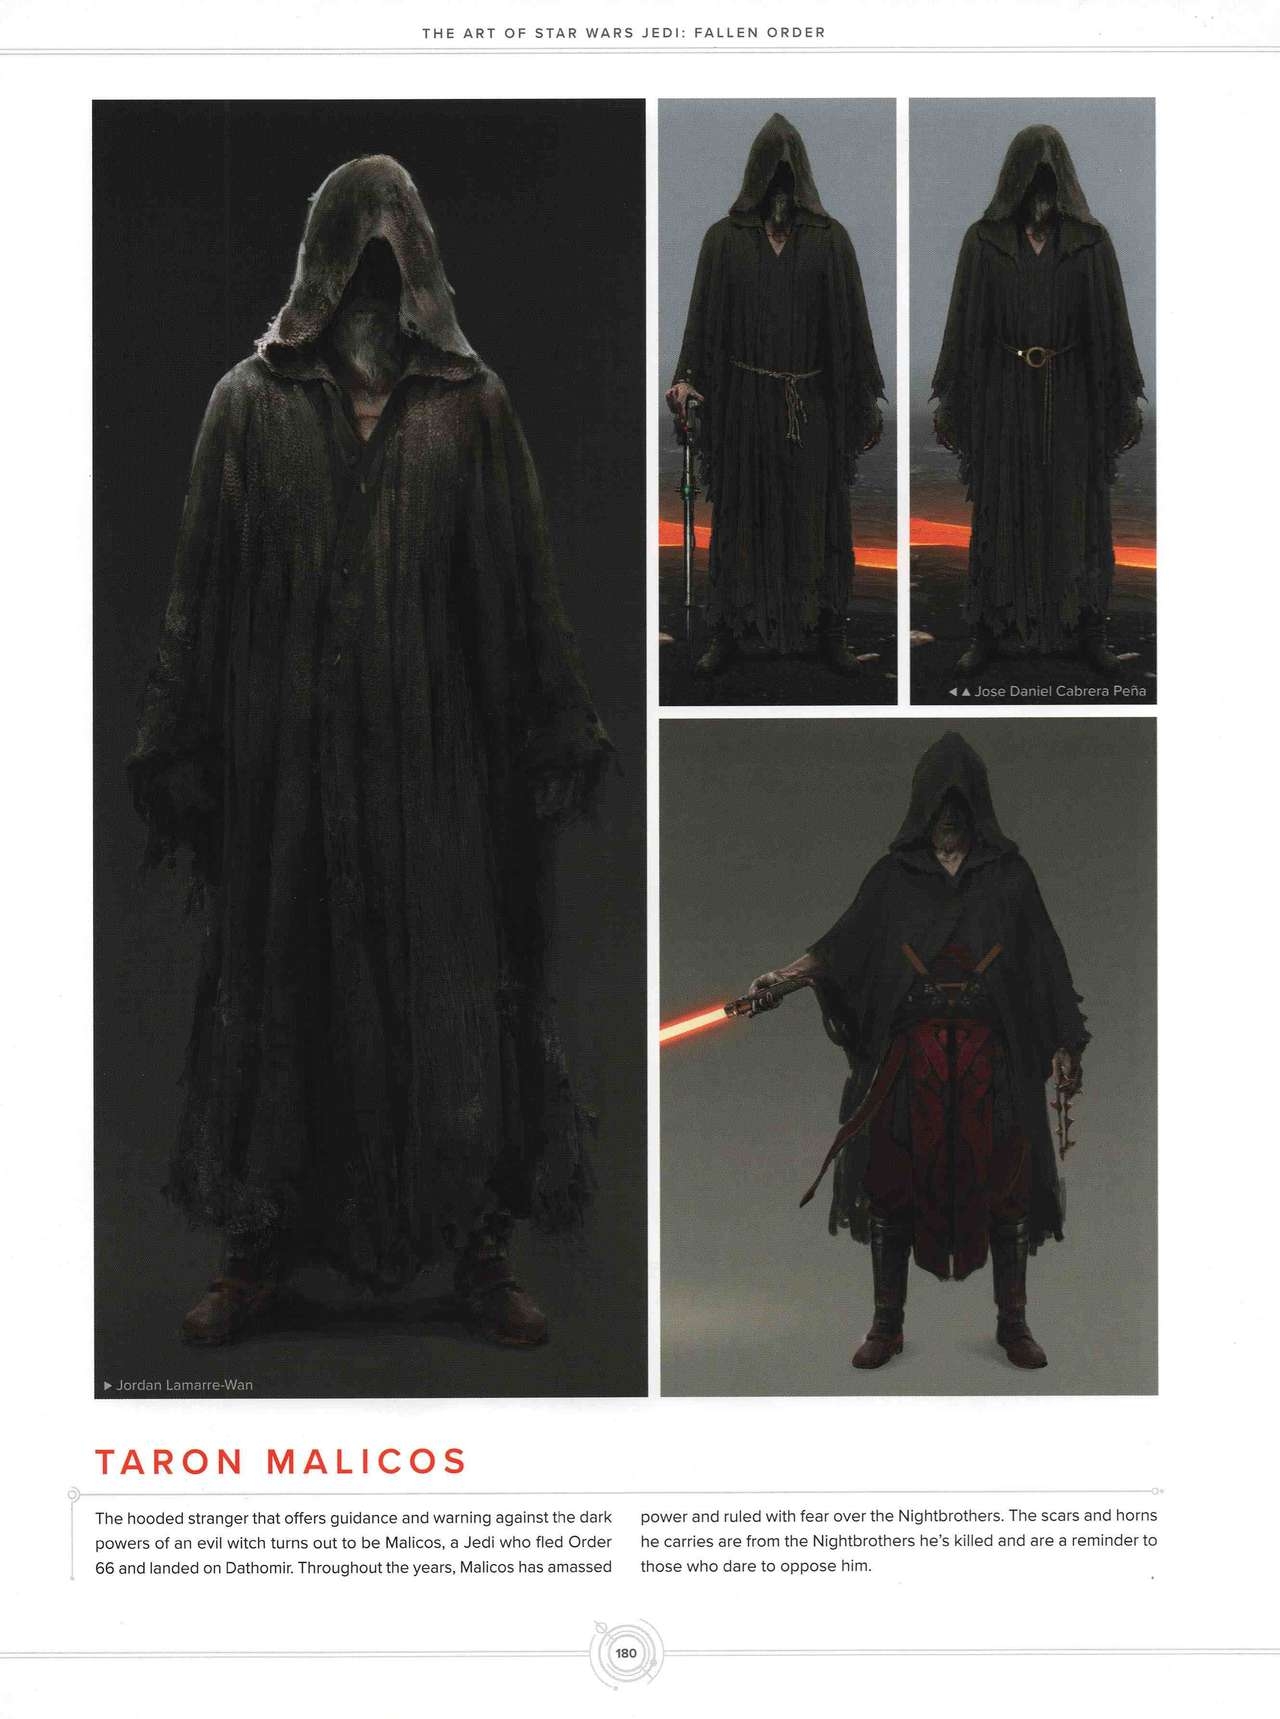 The Art of Star Wars Jedi - Fallen Order 154